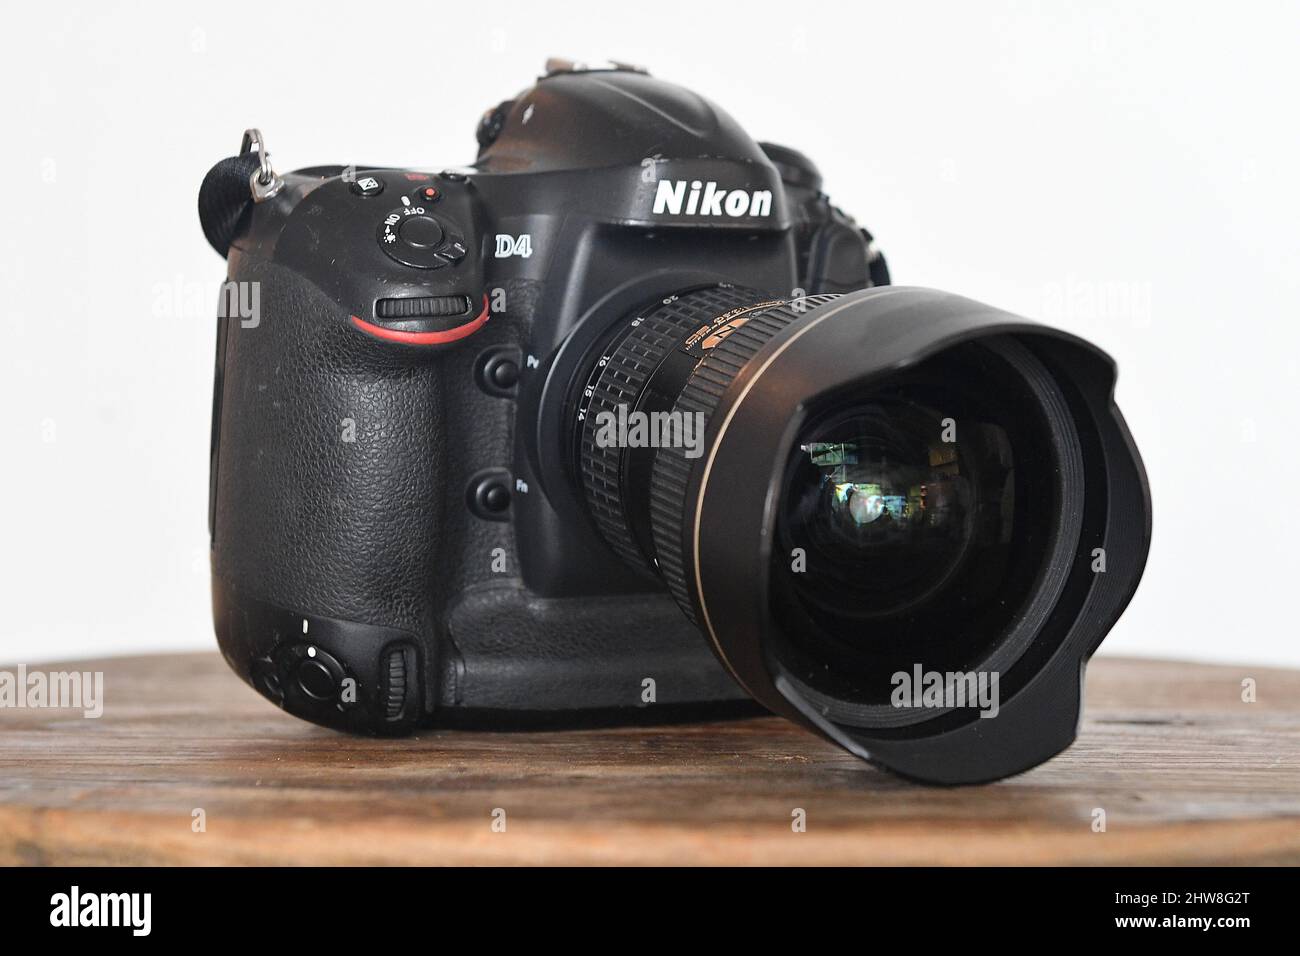 Appareil photo reflex numérique Nikon d4 avec objectif 12-24mm. Manchester, Royaume-Uni. Banque D'Images